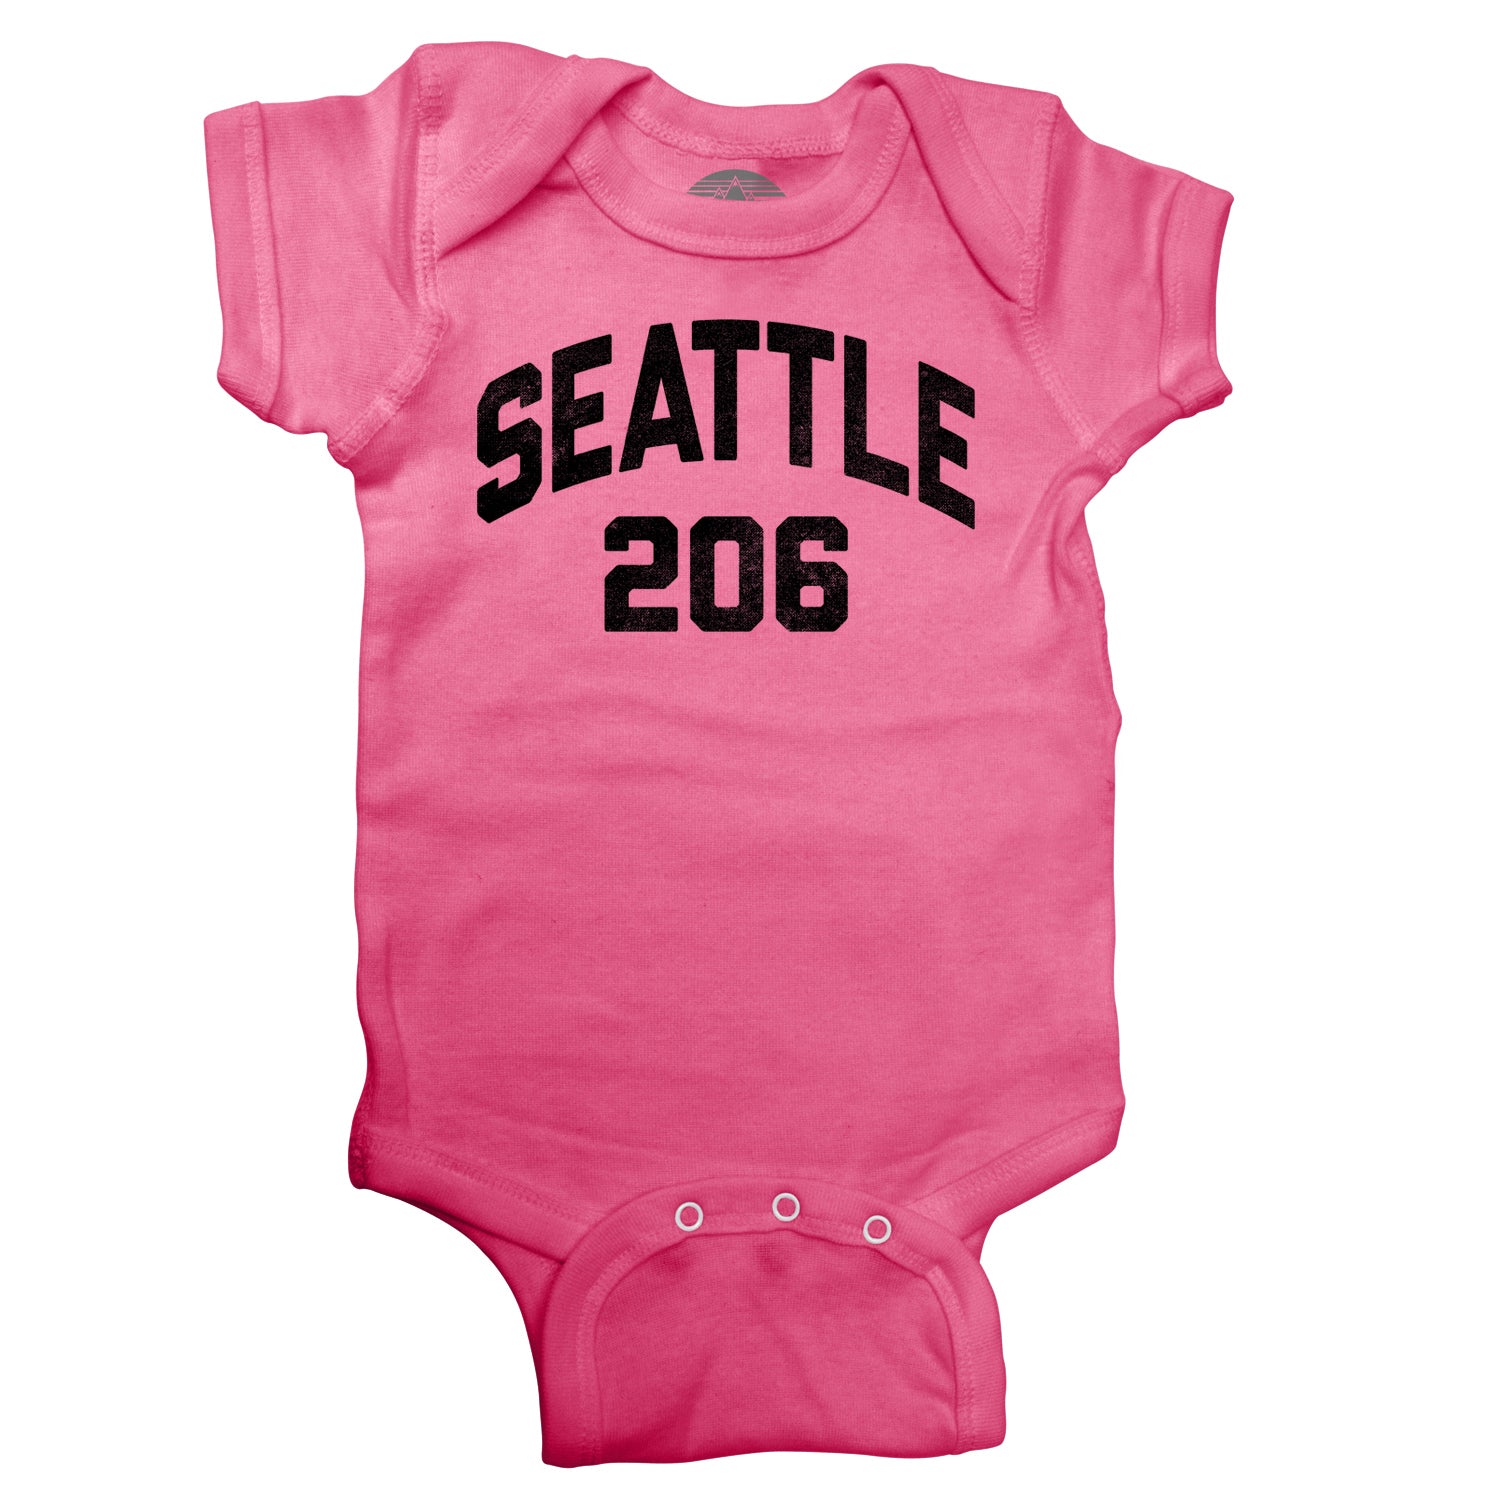 Seattle 206 Area Code Infant Bodysuit - Unisex Fit